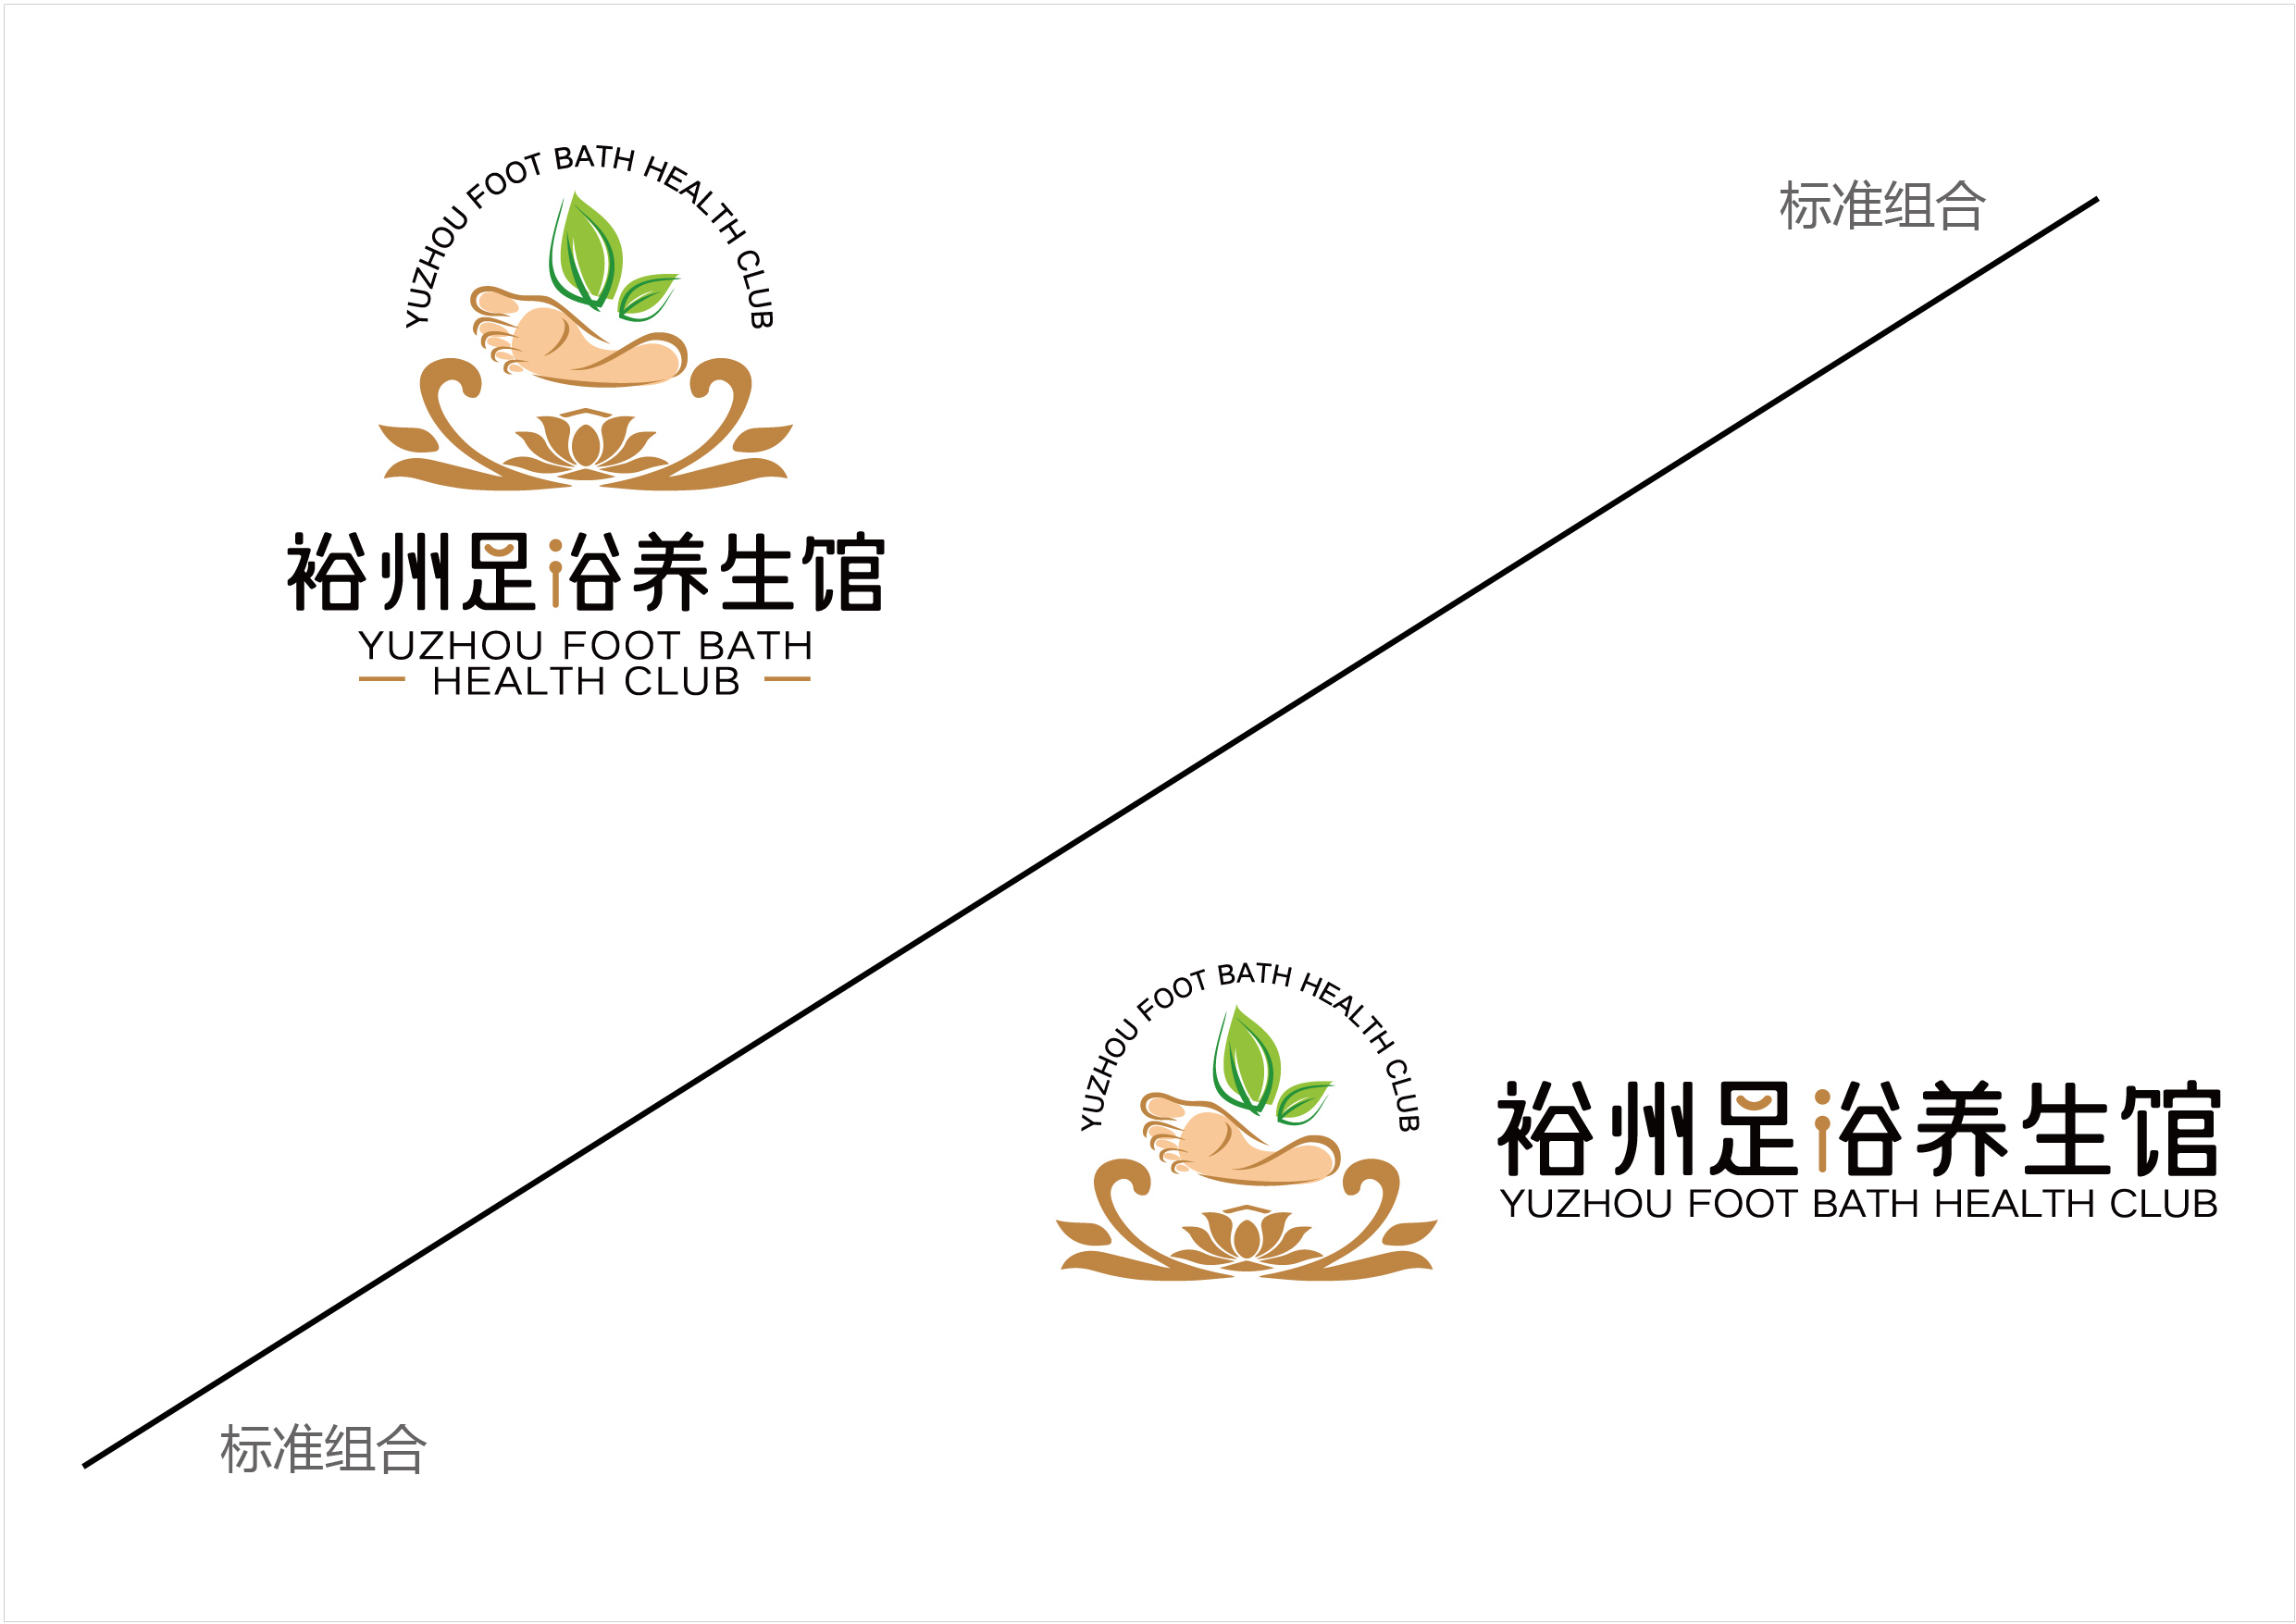 裕州-主题酒店及足浴养生馆logo方案1 20201113-15.jpg